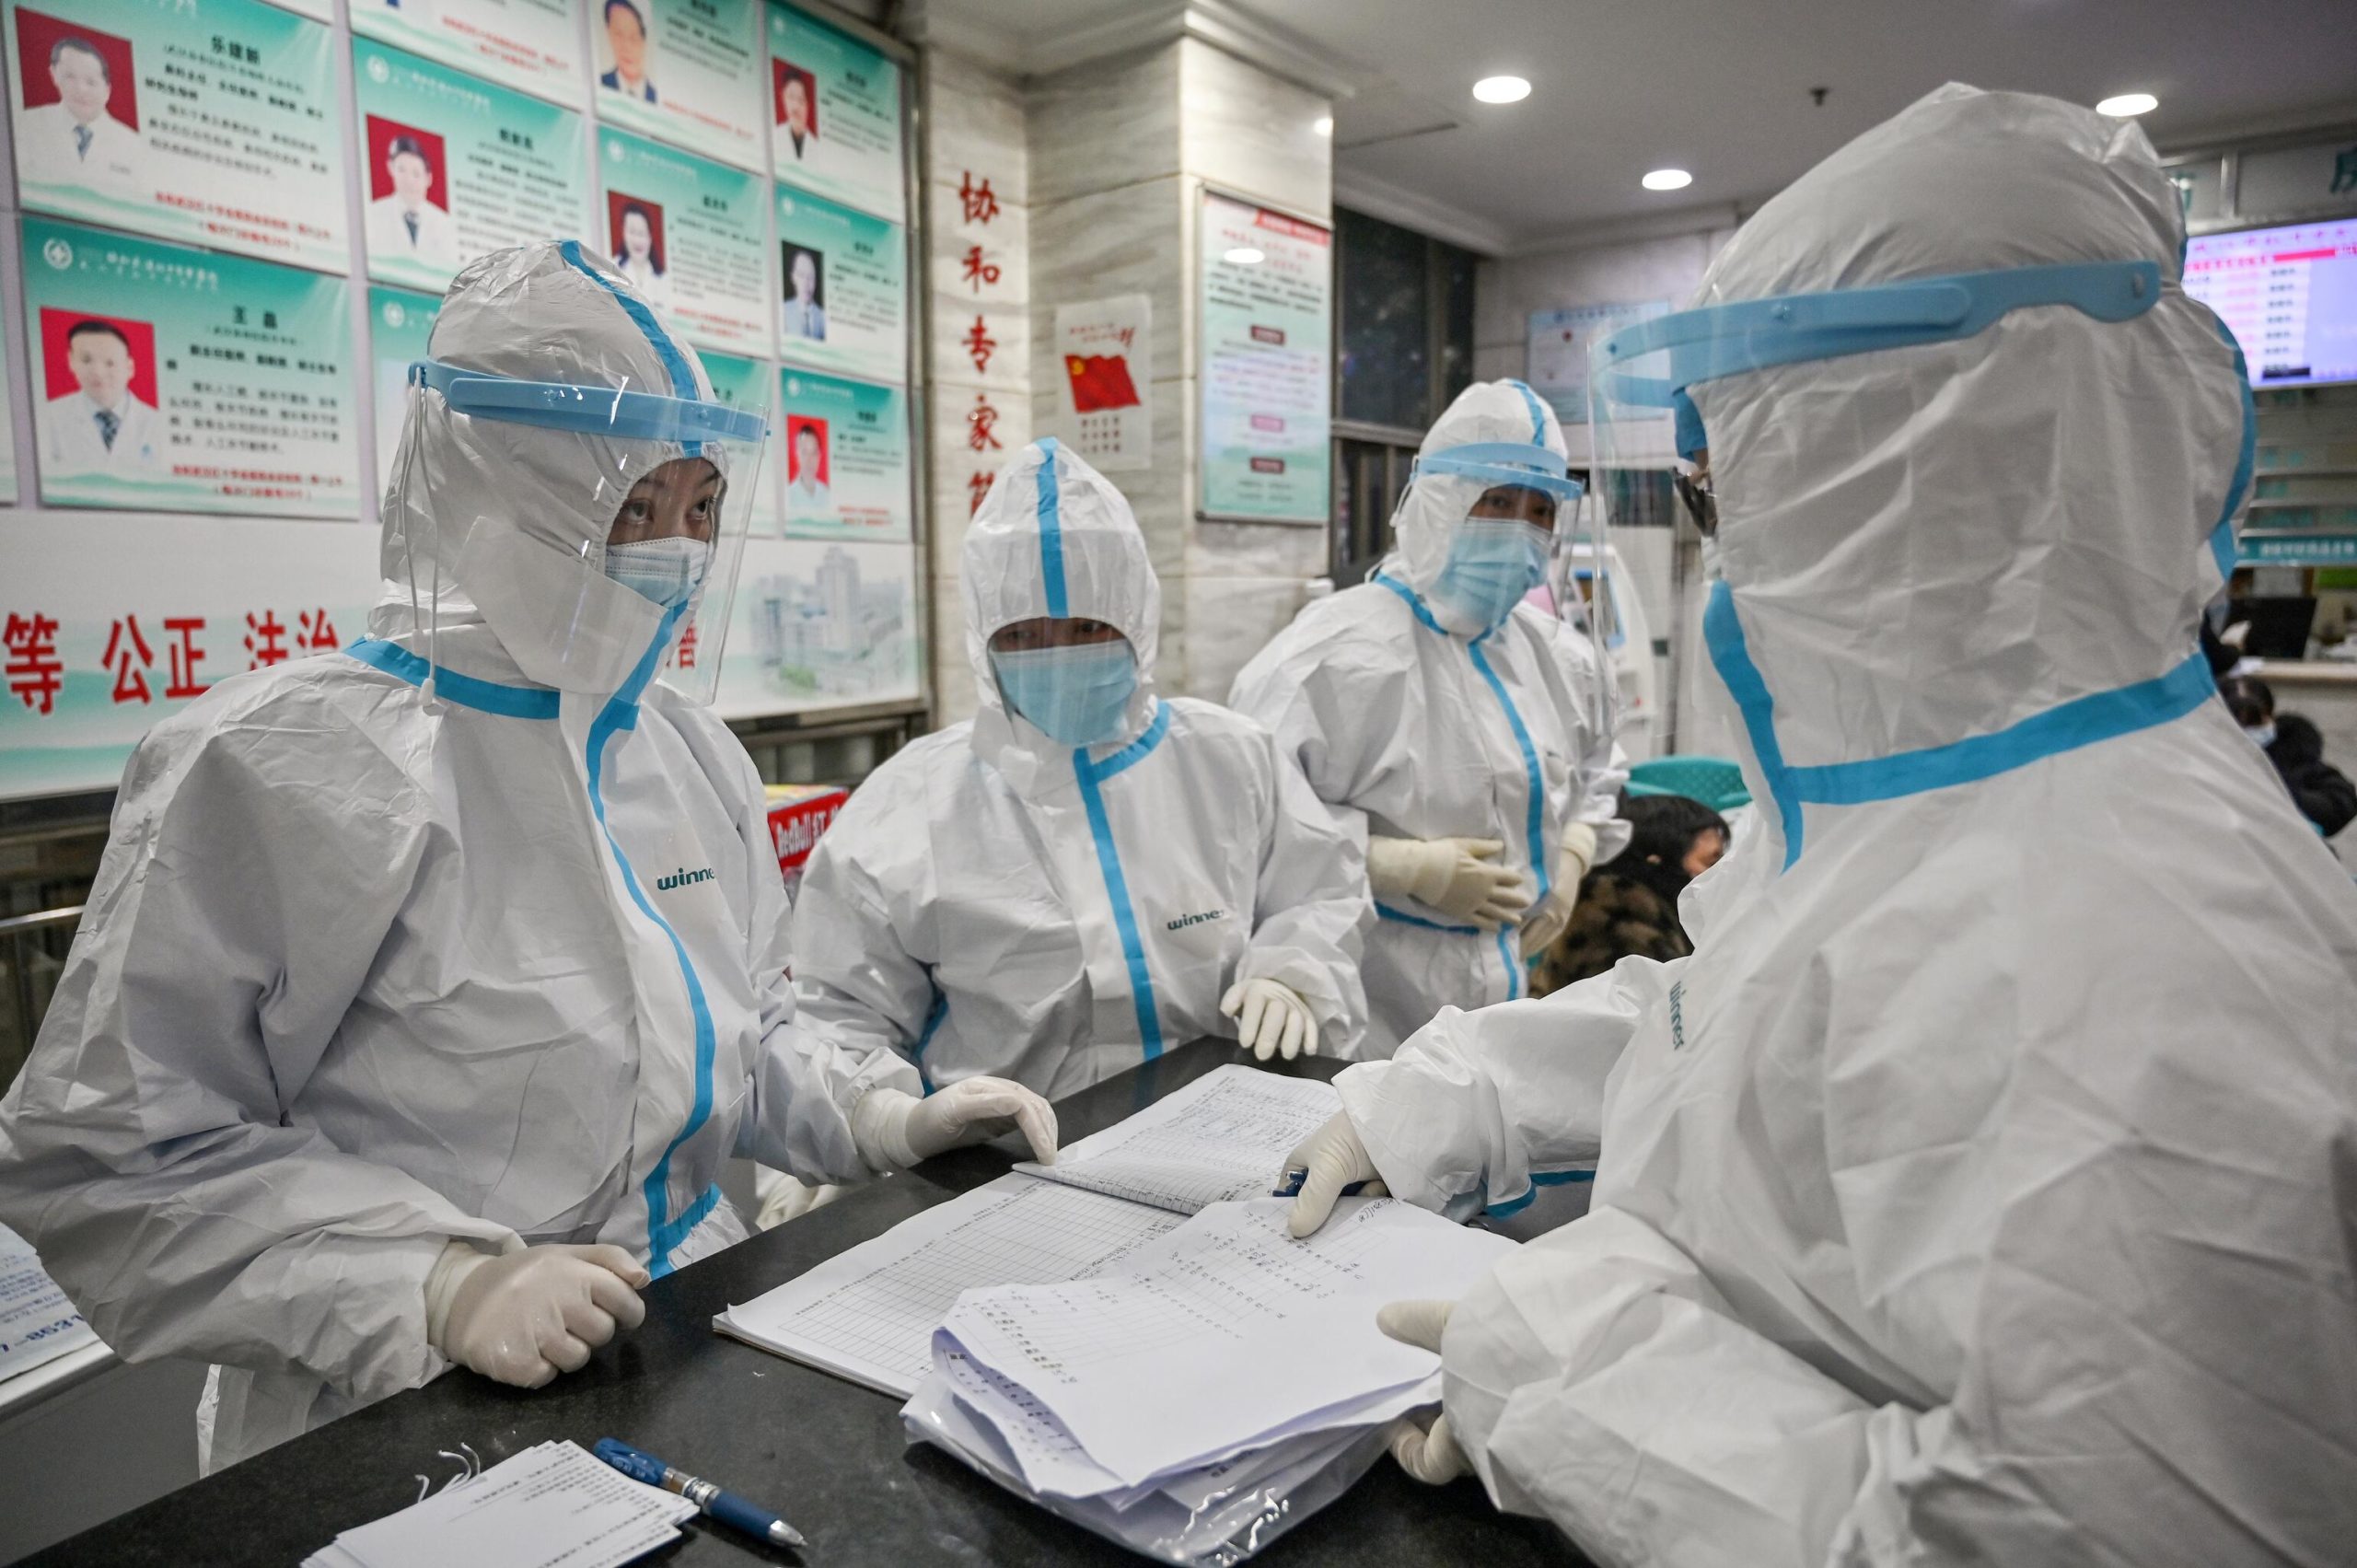 Медработники в защитной одежде в Уханьской больнице Красного Креста, Китай. 25 января 2020 / © AFP